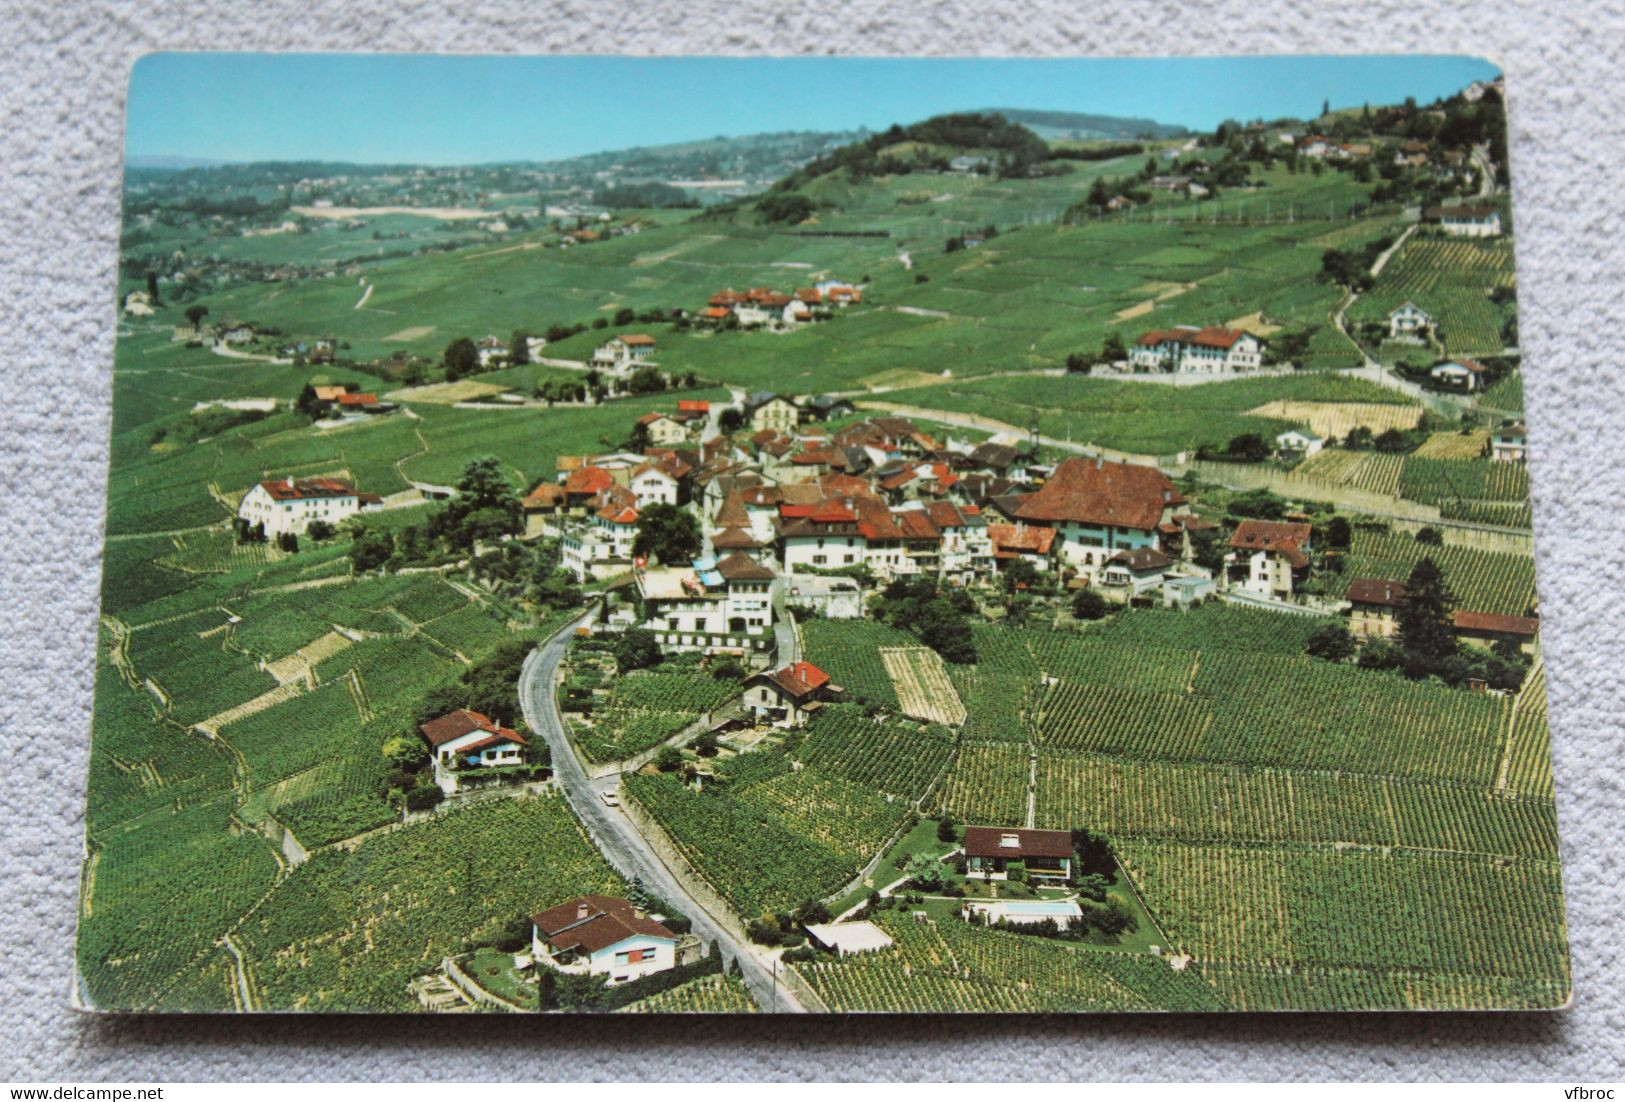 Cpm, Grandvaux, Vignobles De Lavaux, Suisse - Grandvaux